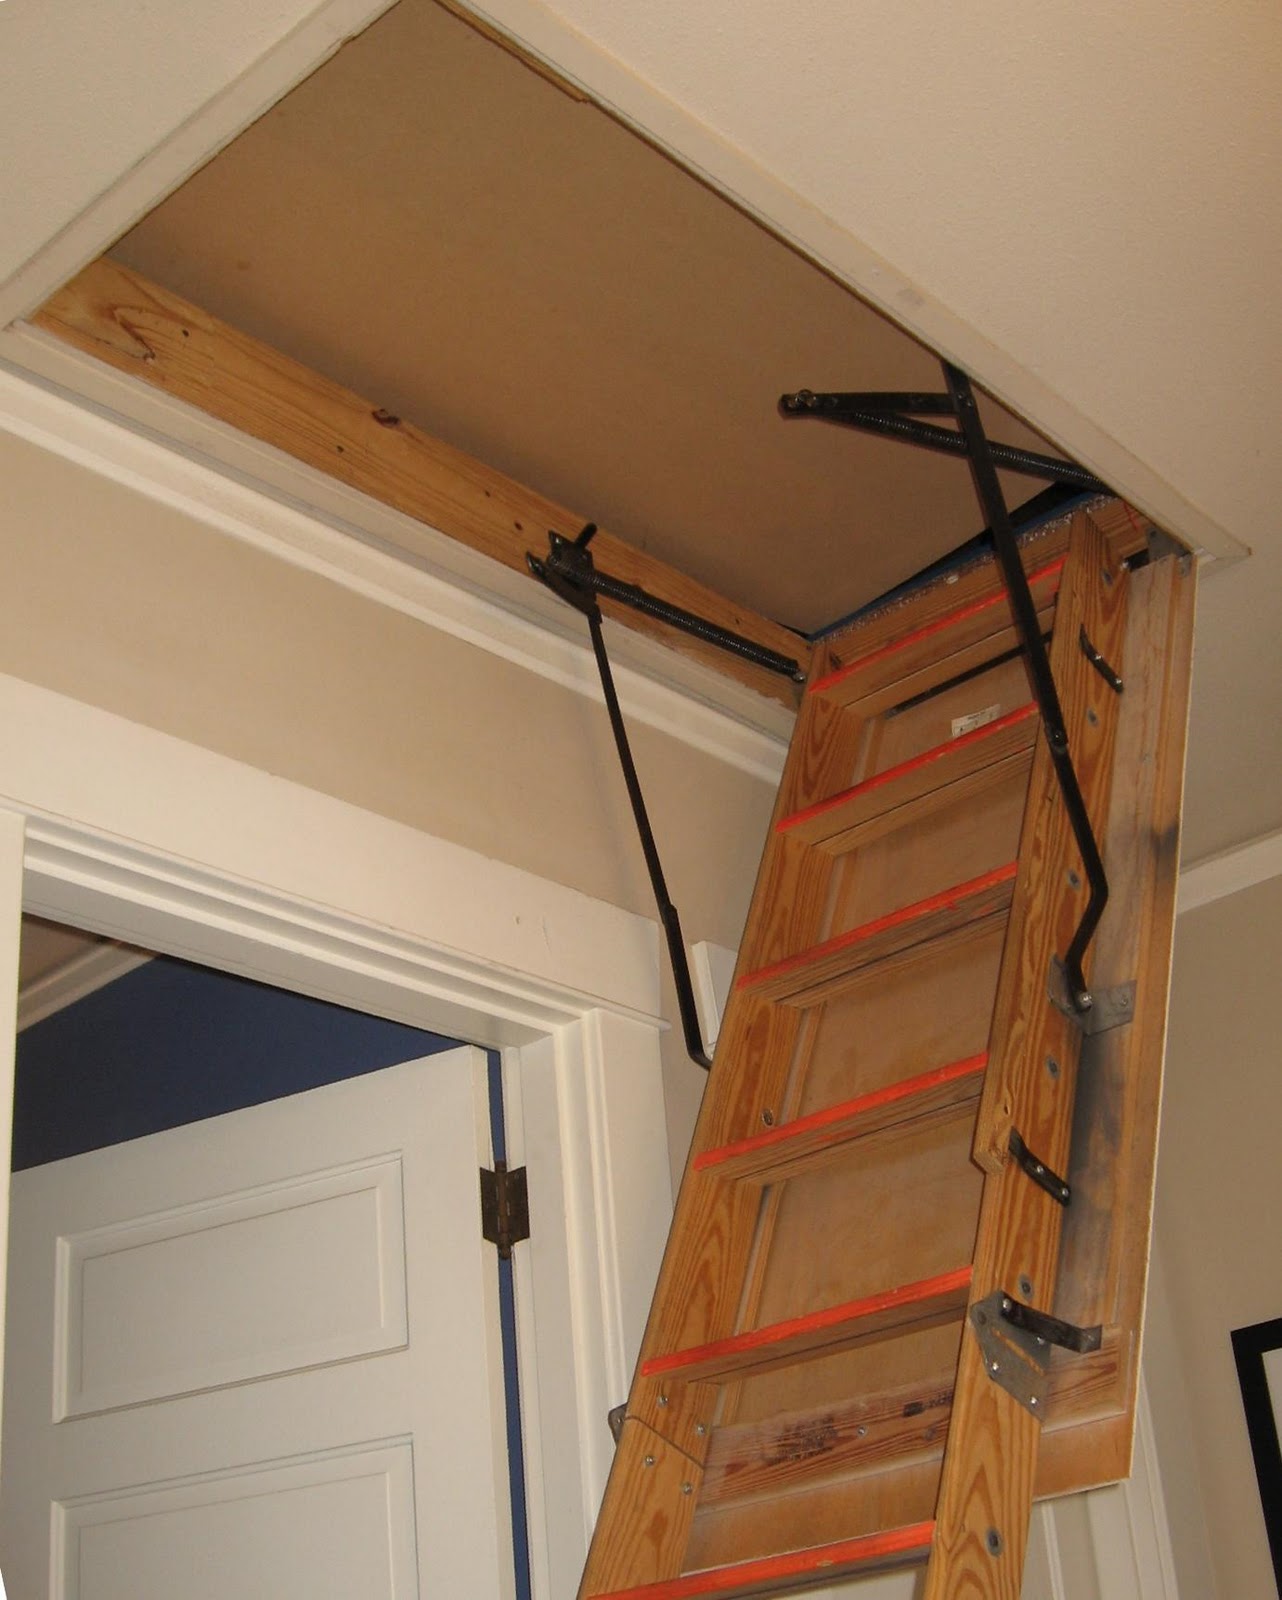 R5 Portals Fakro Attic Ladder Installation Progress